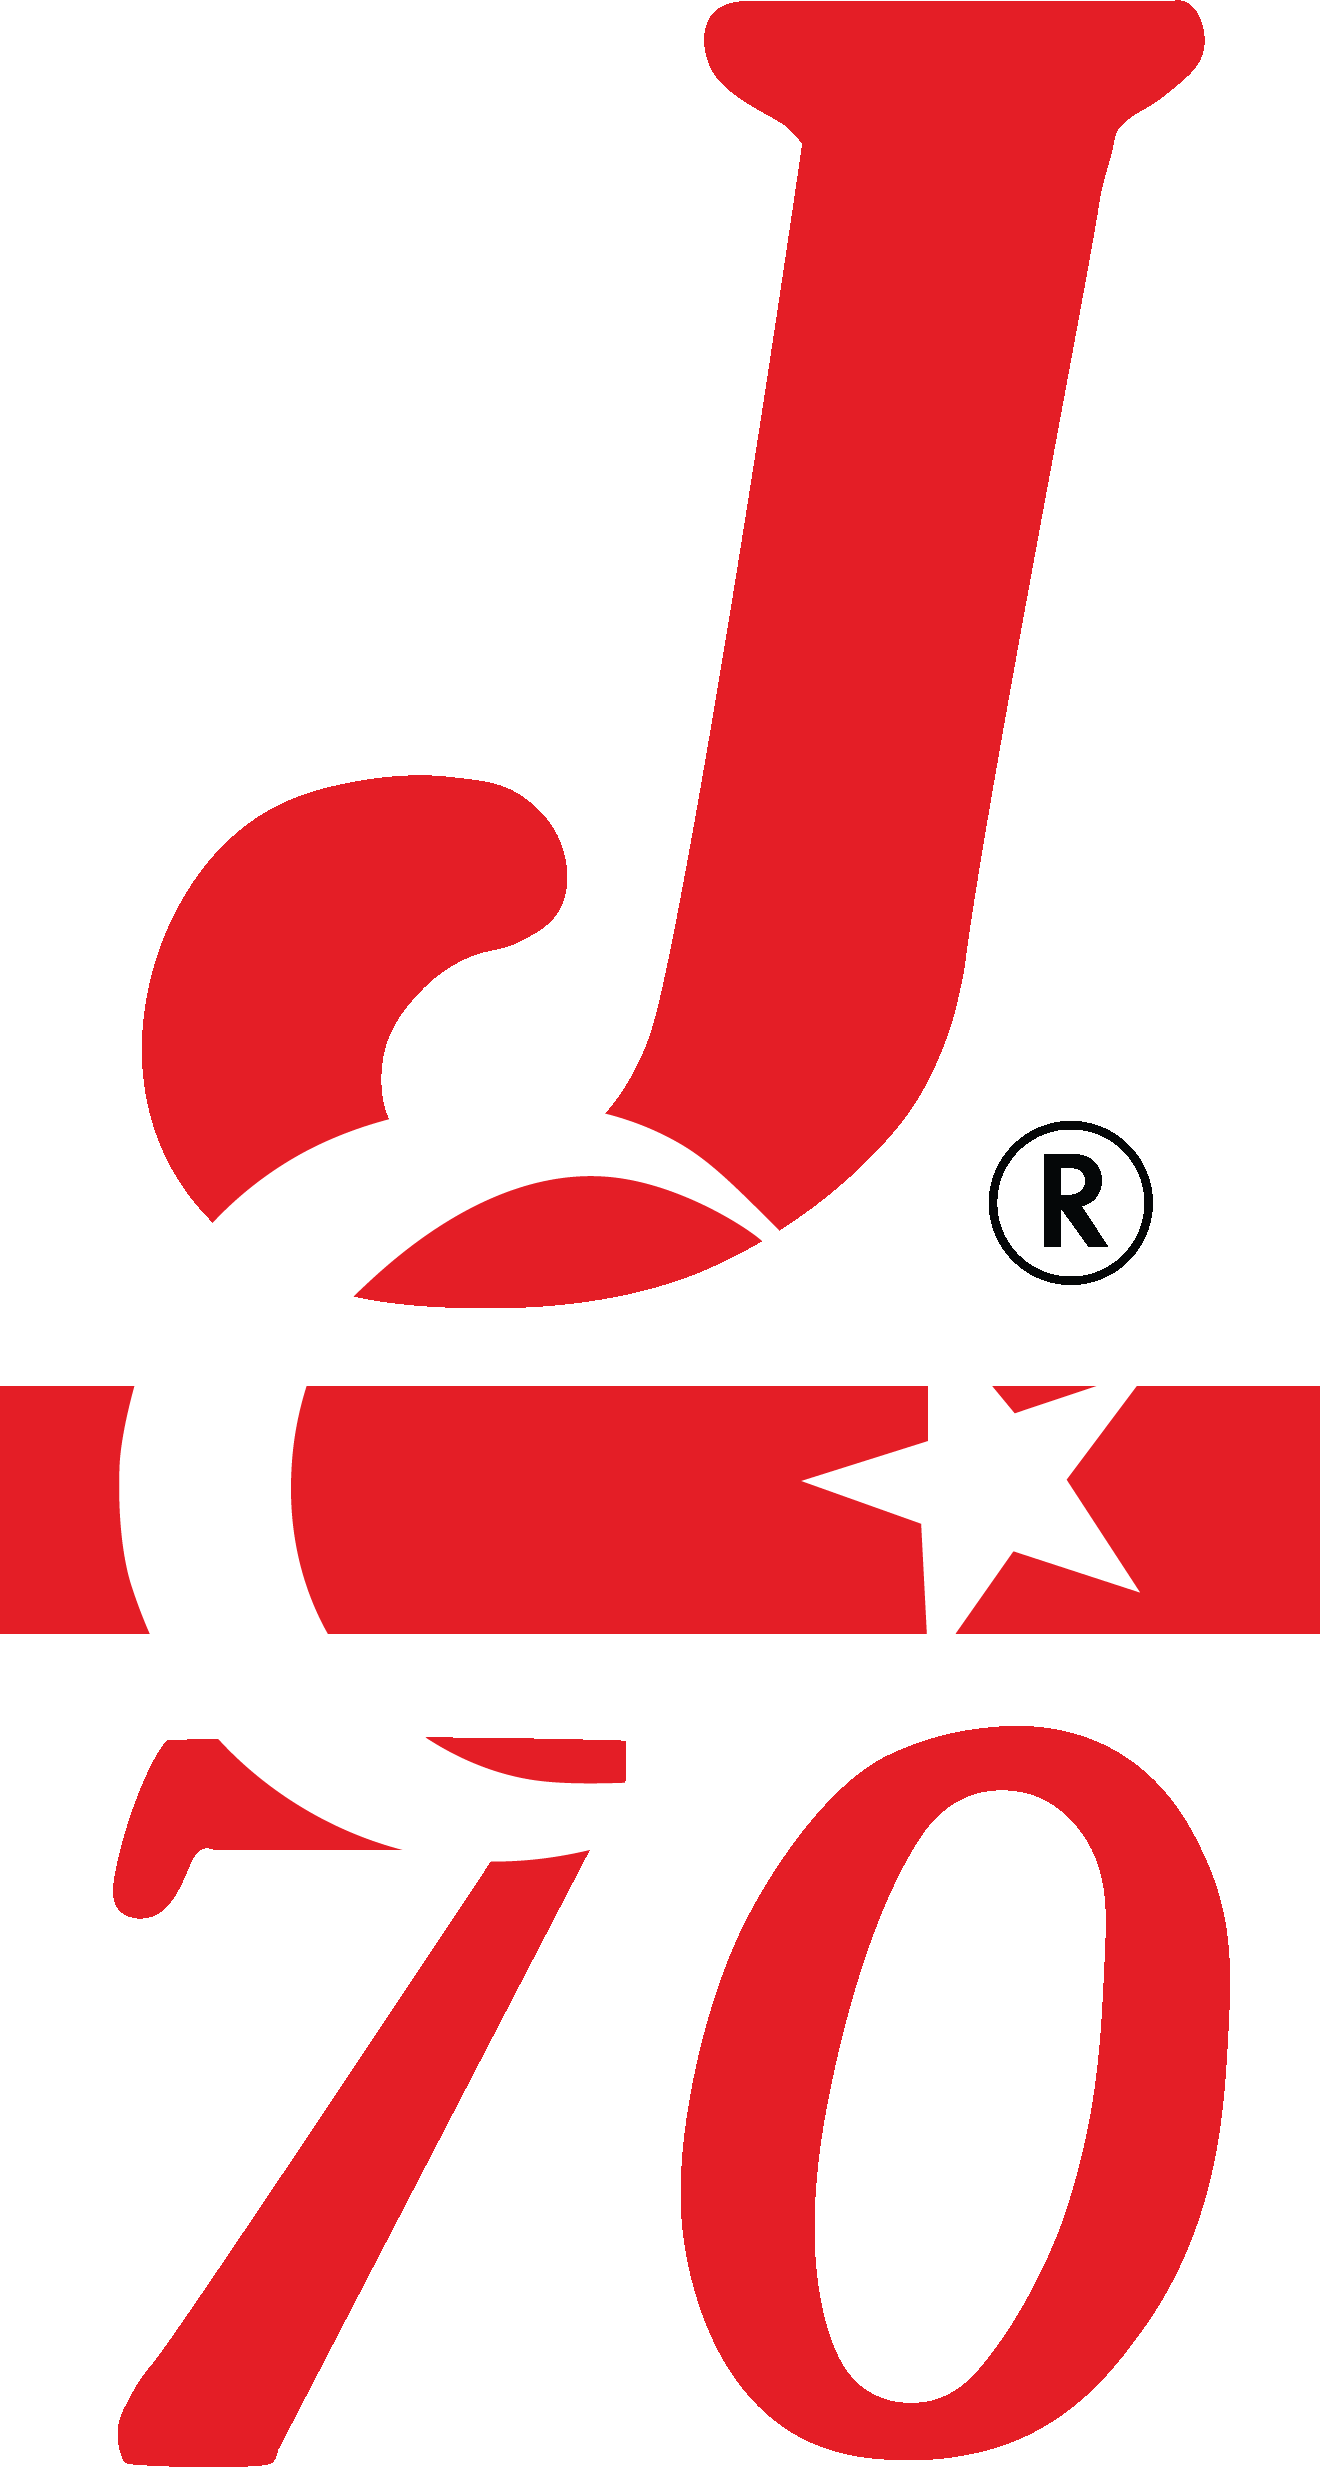 J/70 Türkiye Birliği